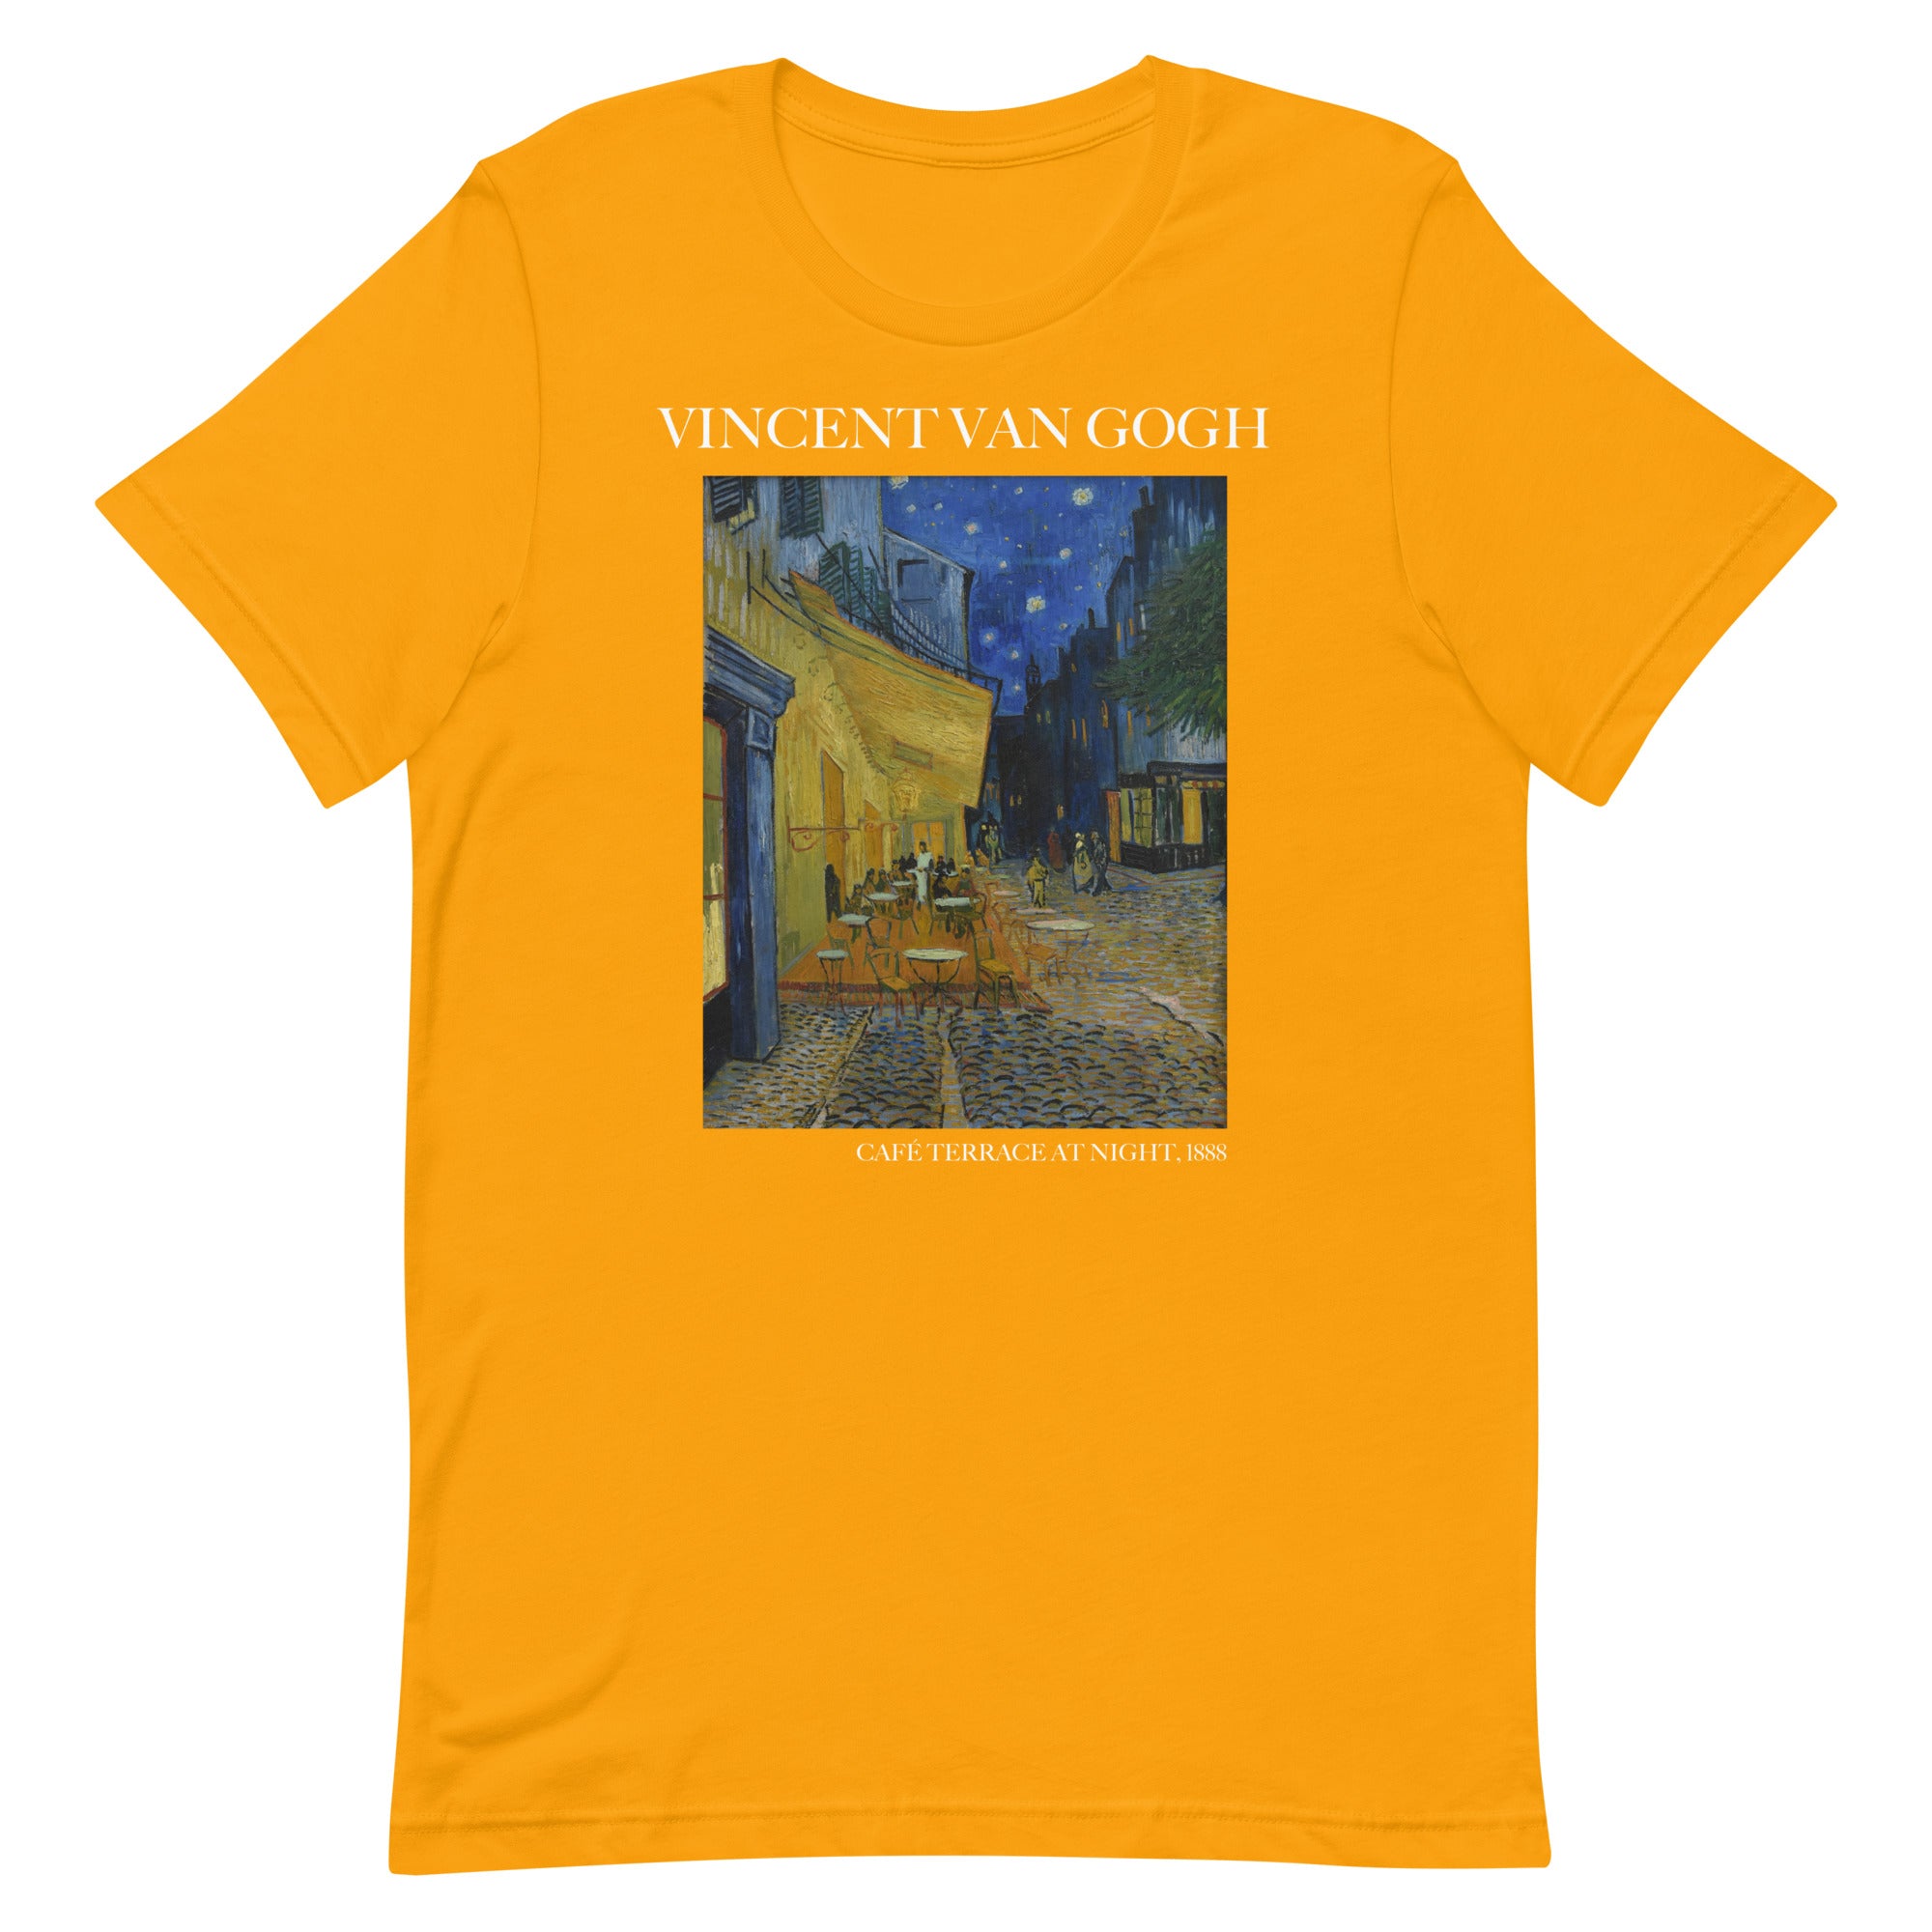 T-Shirt mit dem berühmten Gemälde „Caféterrasse bei Nacht“ von Vincent van Gogh | Unisex-T-Shirt im klassischen Kunststil